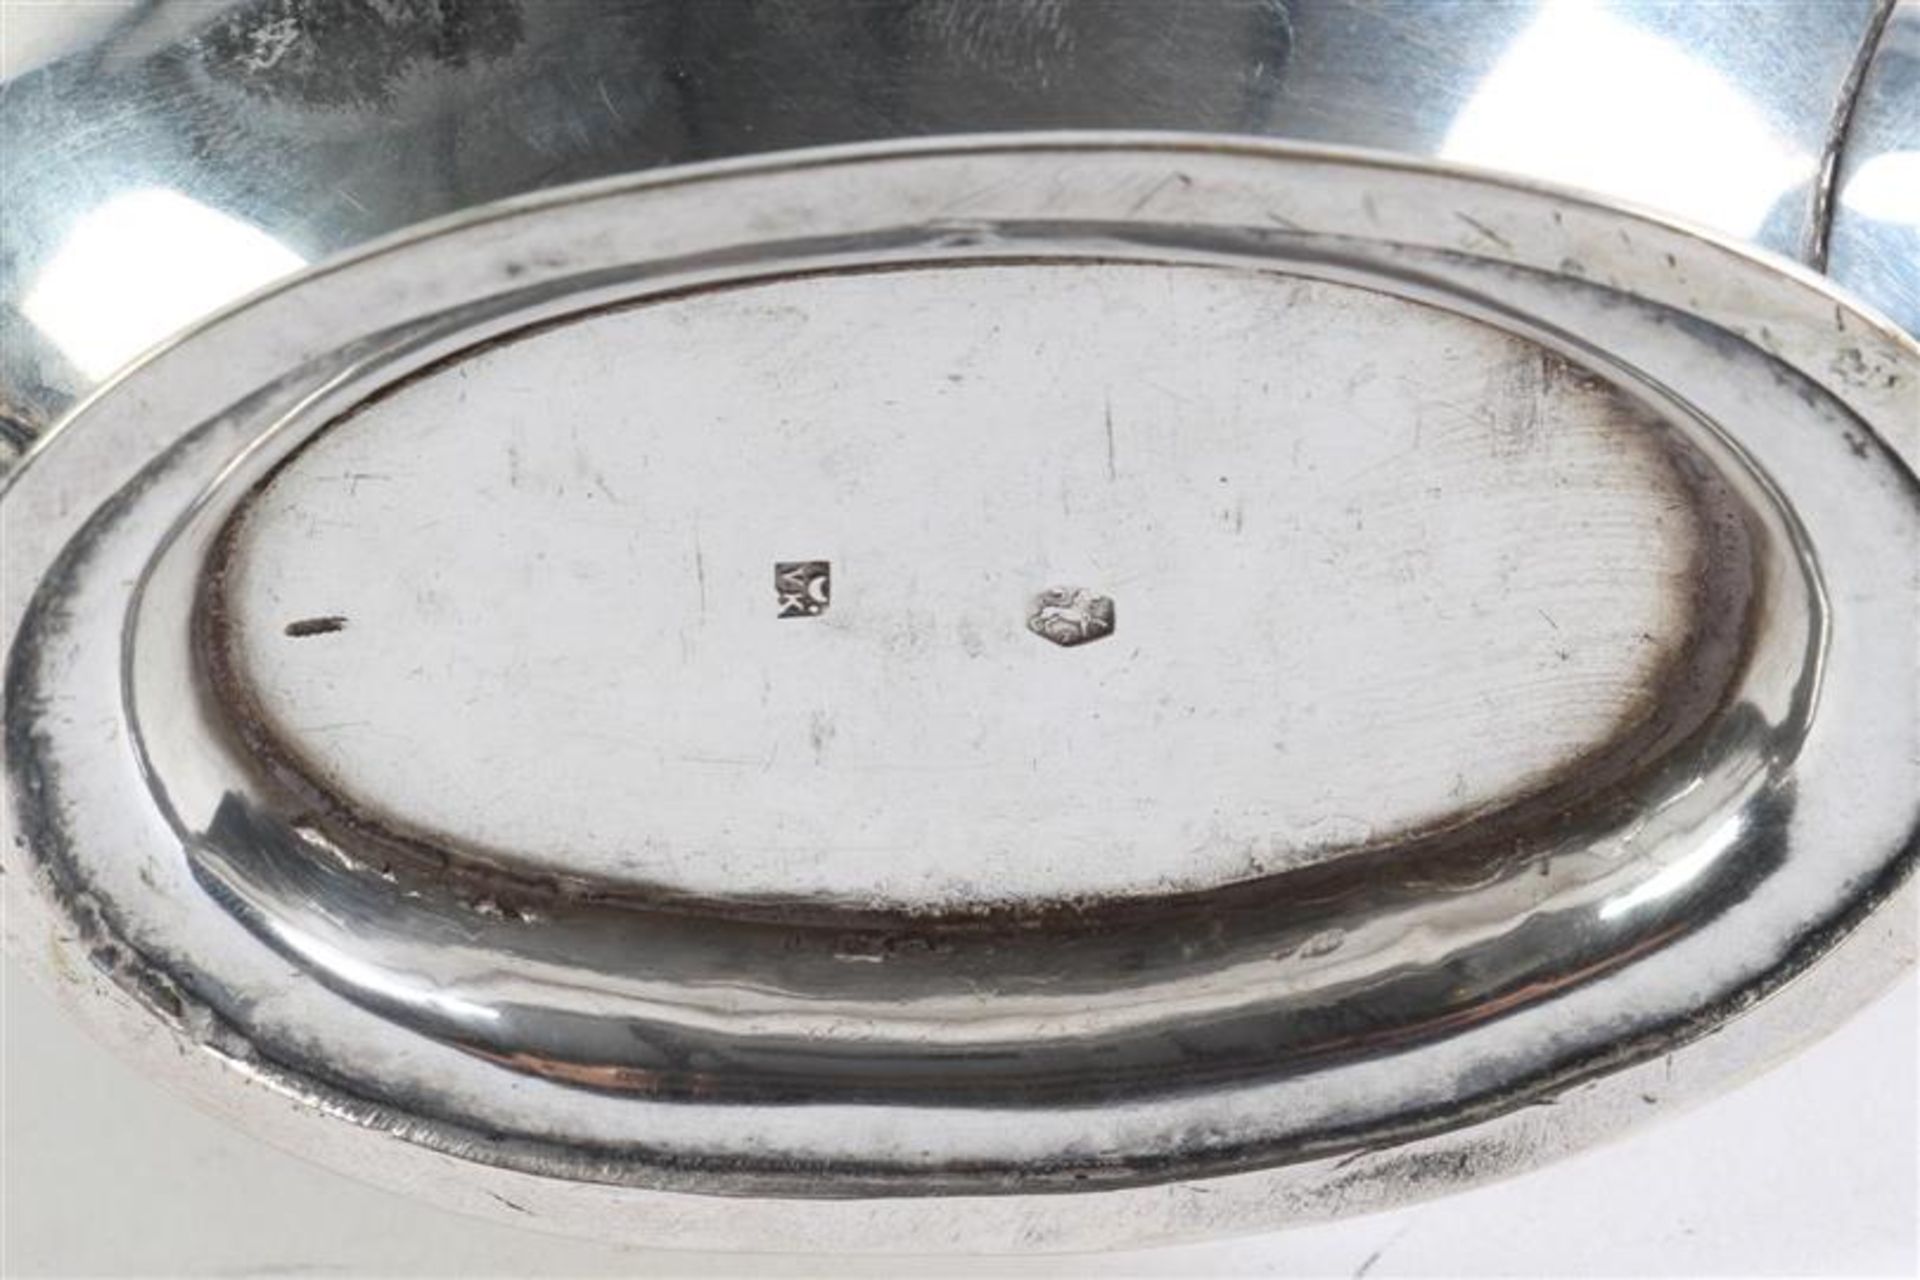 Vierdelig zilveren theeservies. Gewicht: 740 g. - Bild 9 aus 9